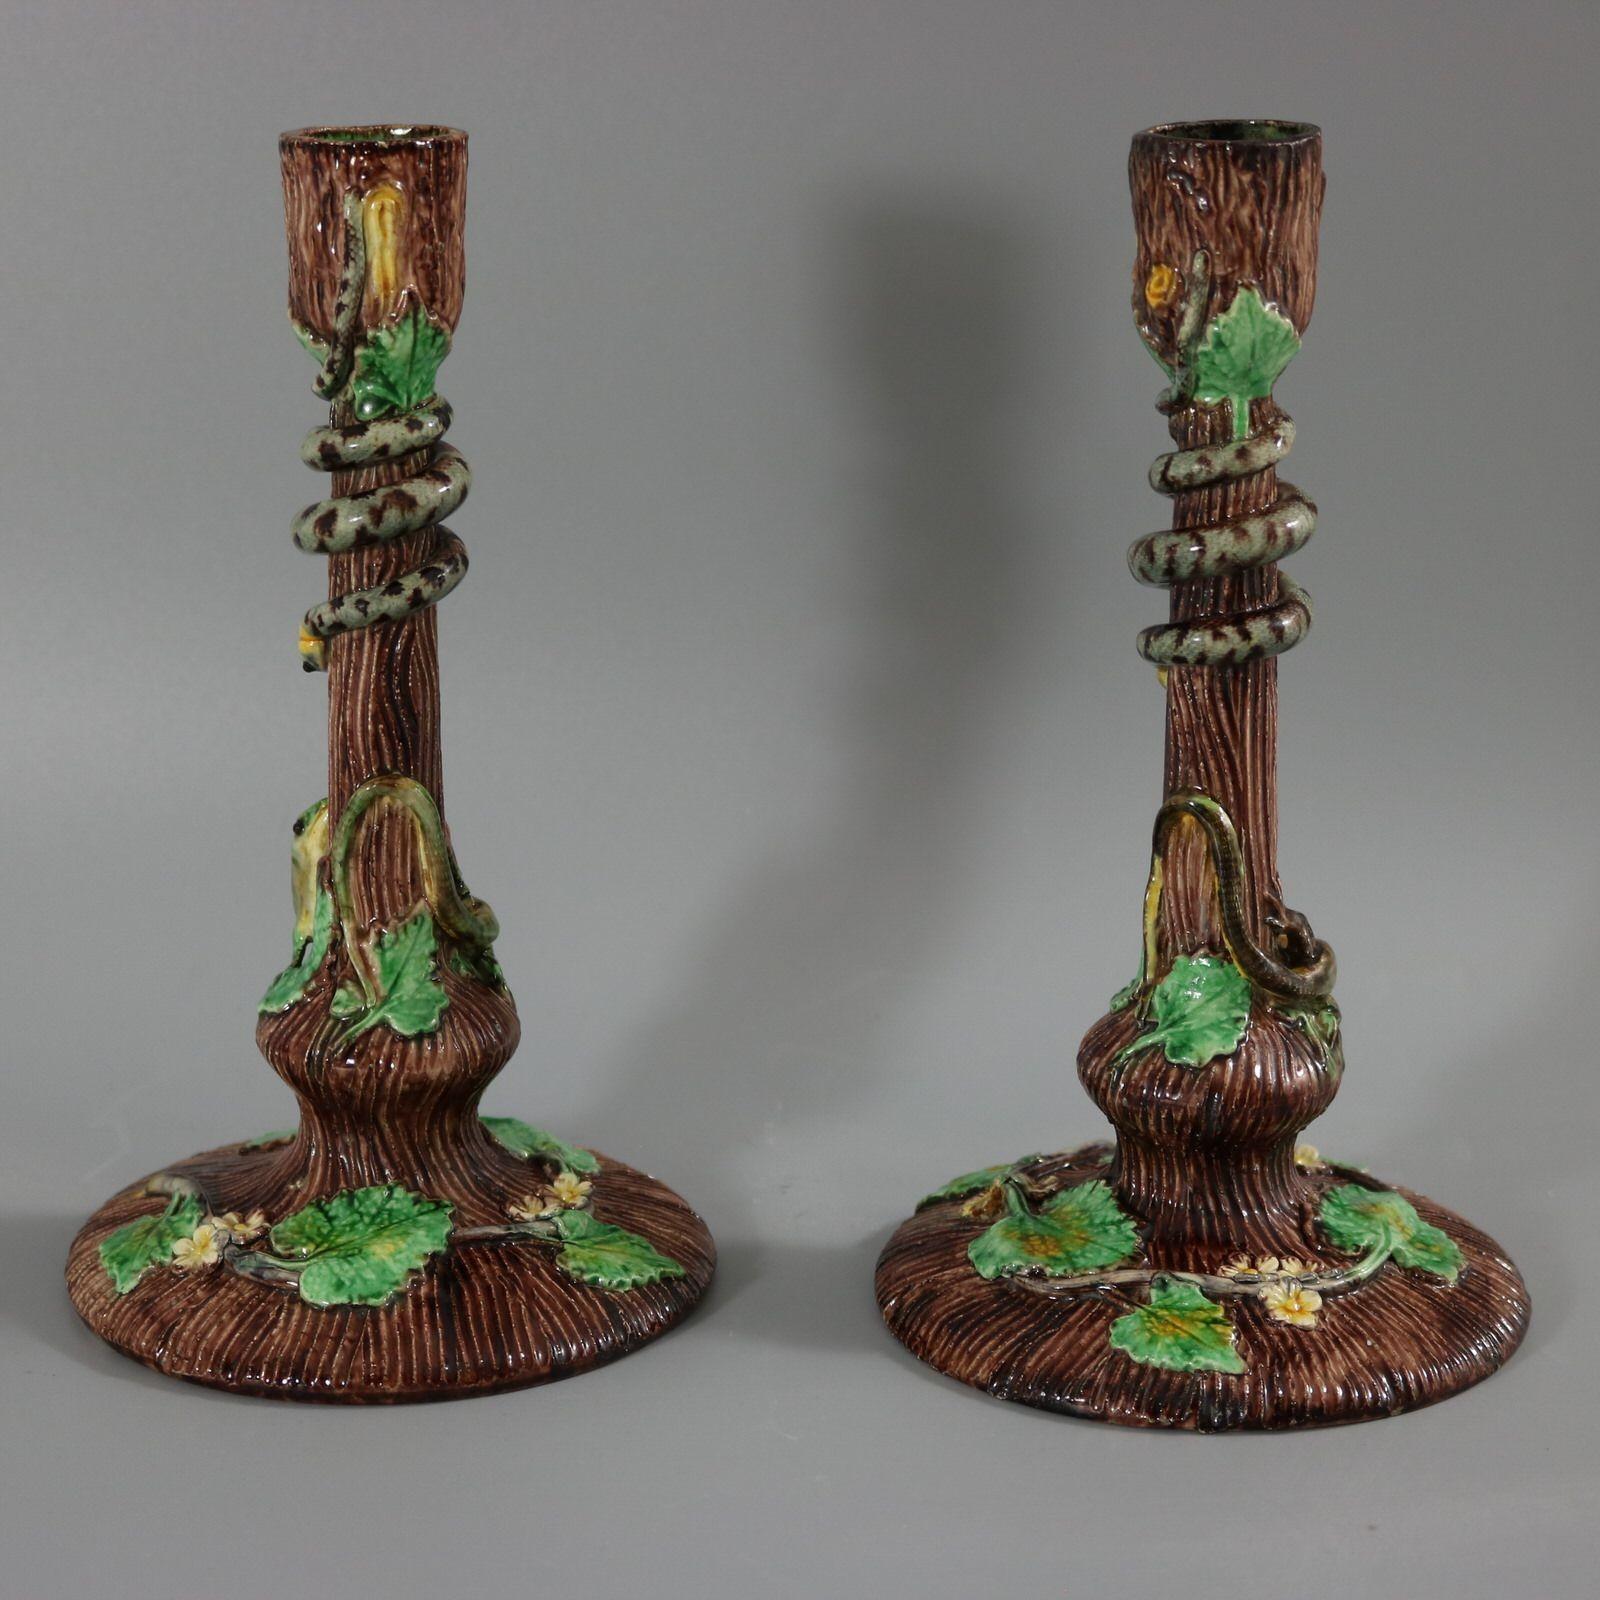 Paar Thomas Sergent Französisch Palissy Majolika Kerzenhalter, die Blüte und Blätter rund um die Basis. Eine Eidechse, die zu einer Schlange am Stamm hinaufschaut. Färbung: Braun, grün, grau, sind vorherrschend. Das Stück trägt die Herstellermarken